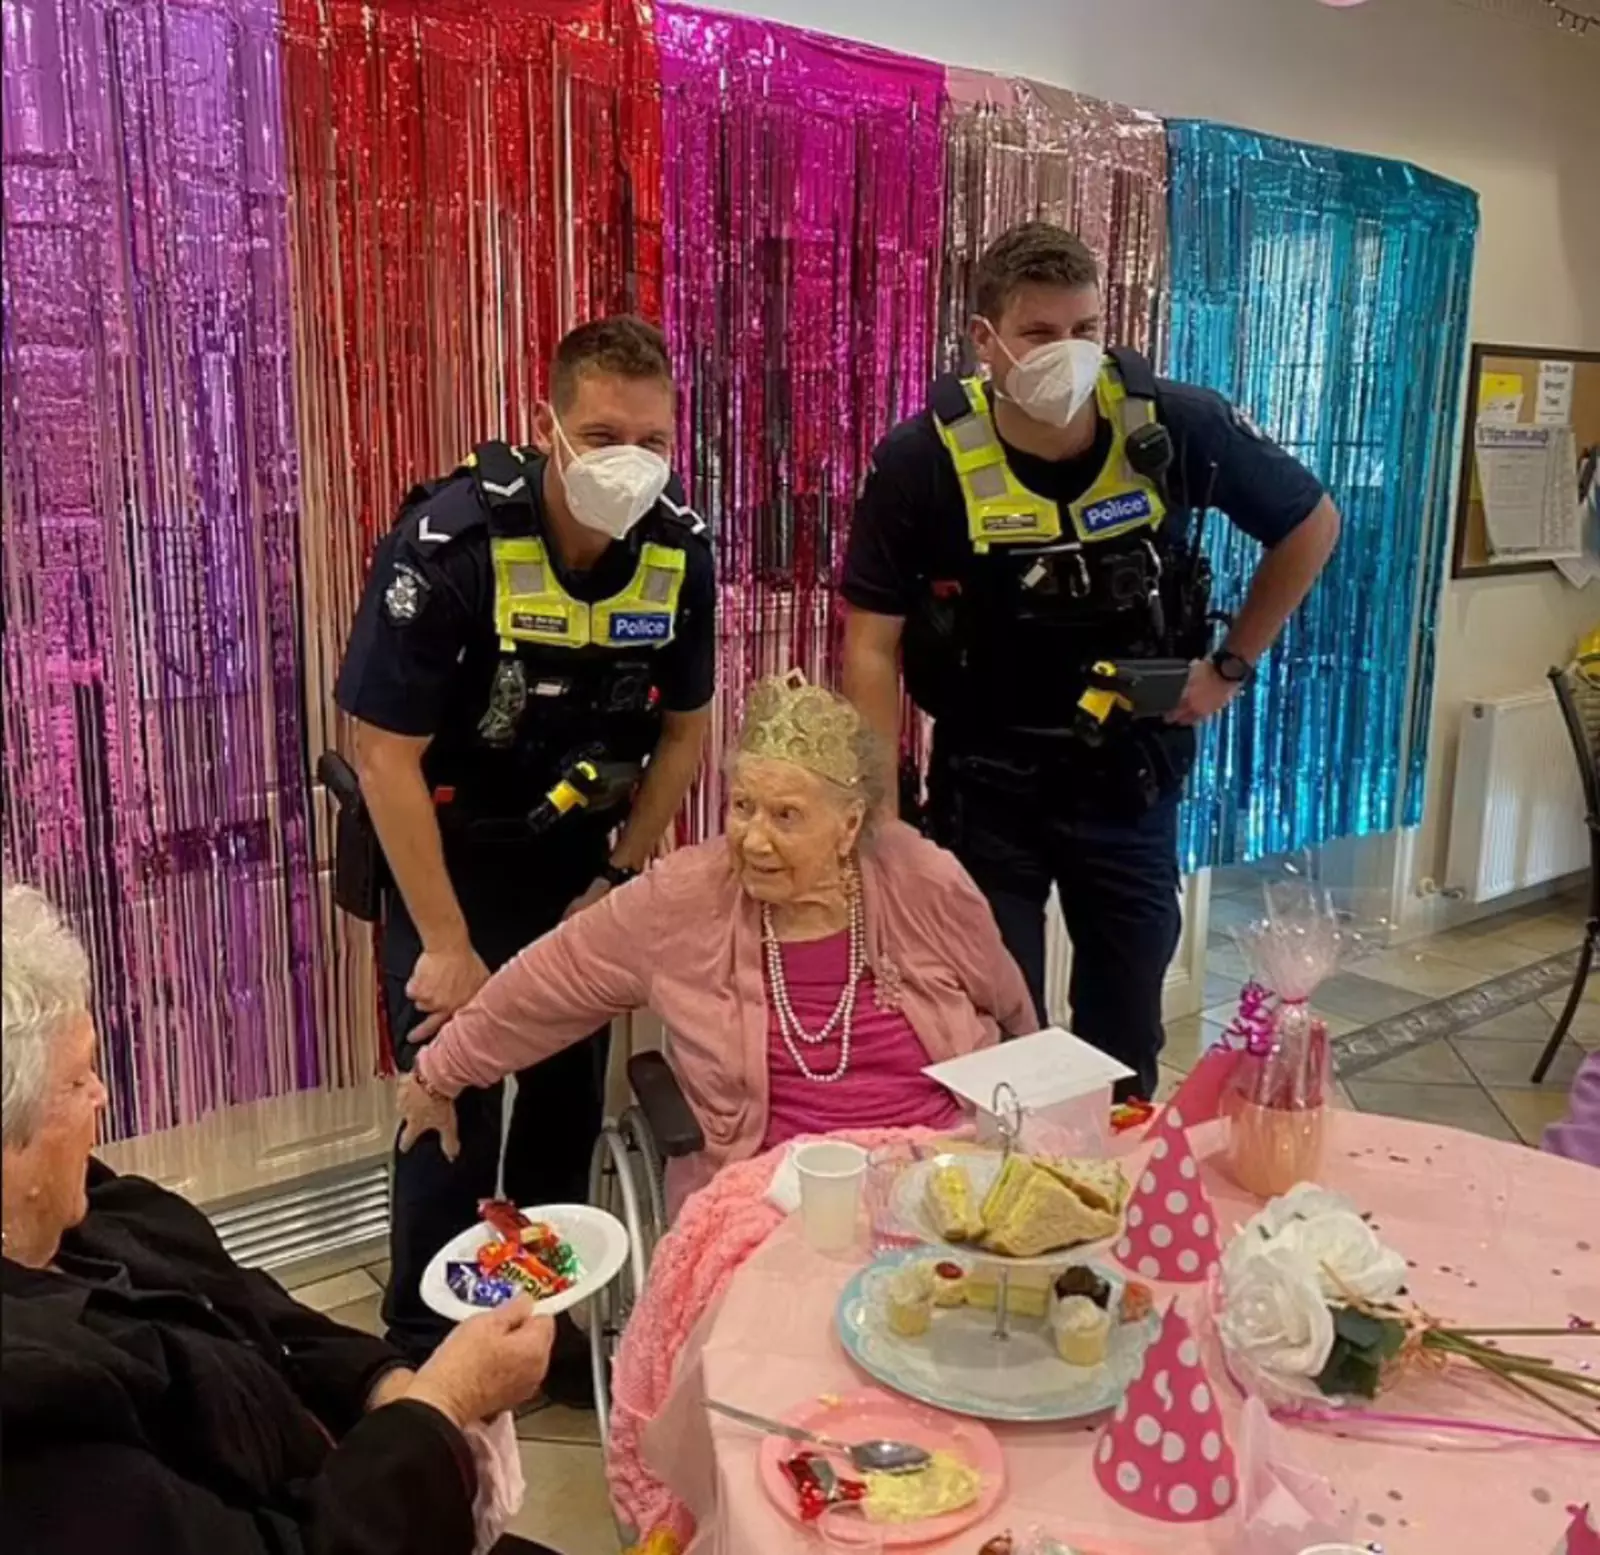 Офицеры с радостью исполнили желание пожилой женщины и приехали на ее день рождения в дом престарелых.